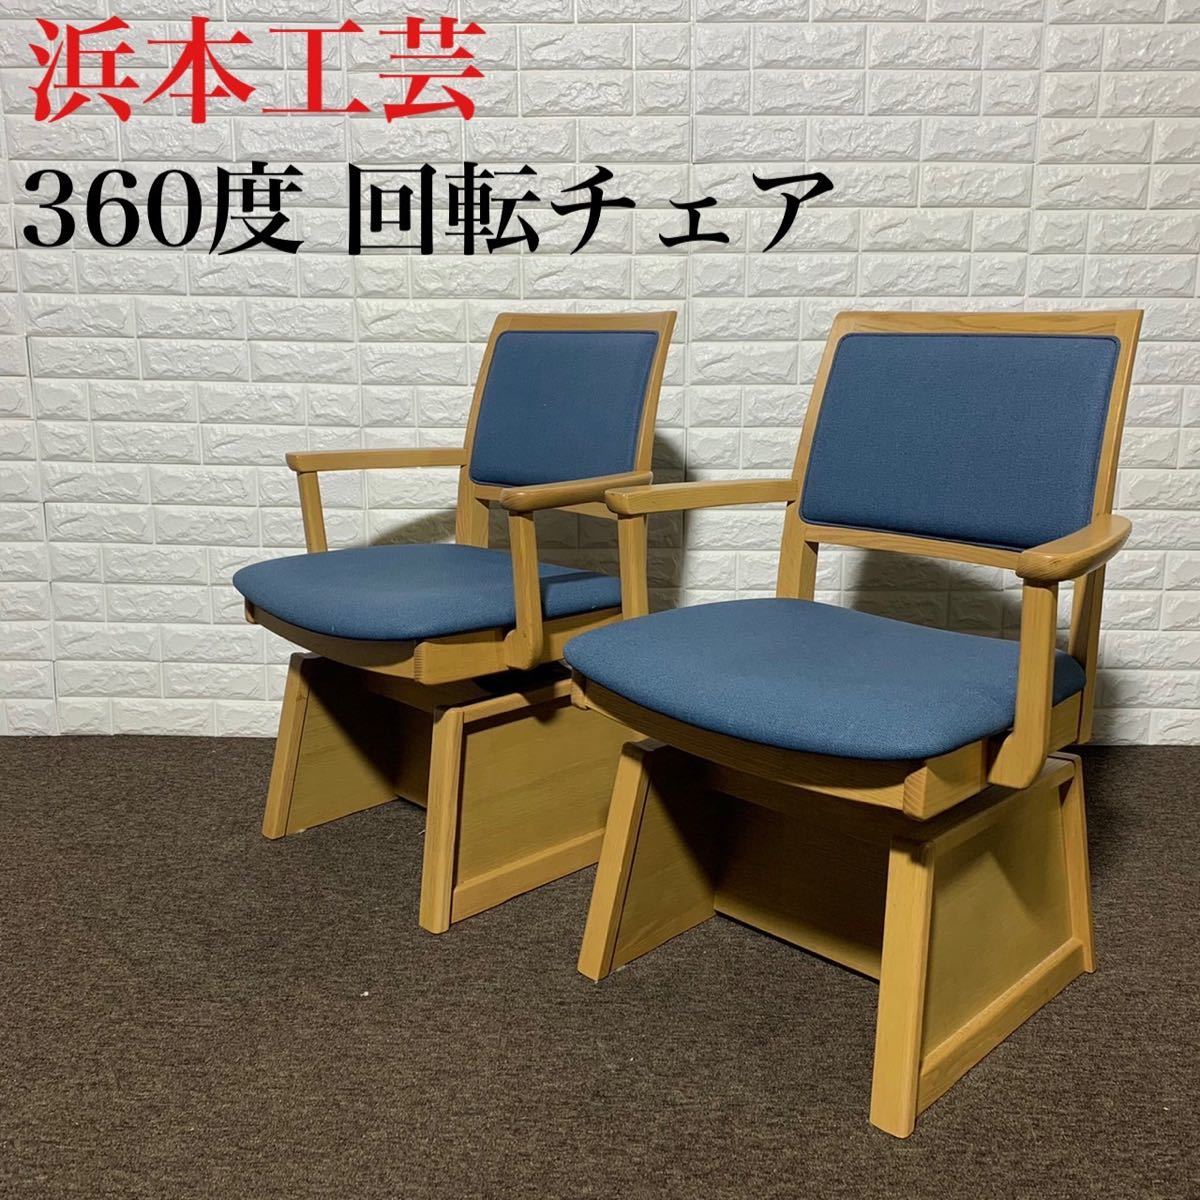 浜本工芸 チェア 回転 360度 高級 おしゃれ 椅子 家具 k0089